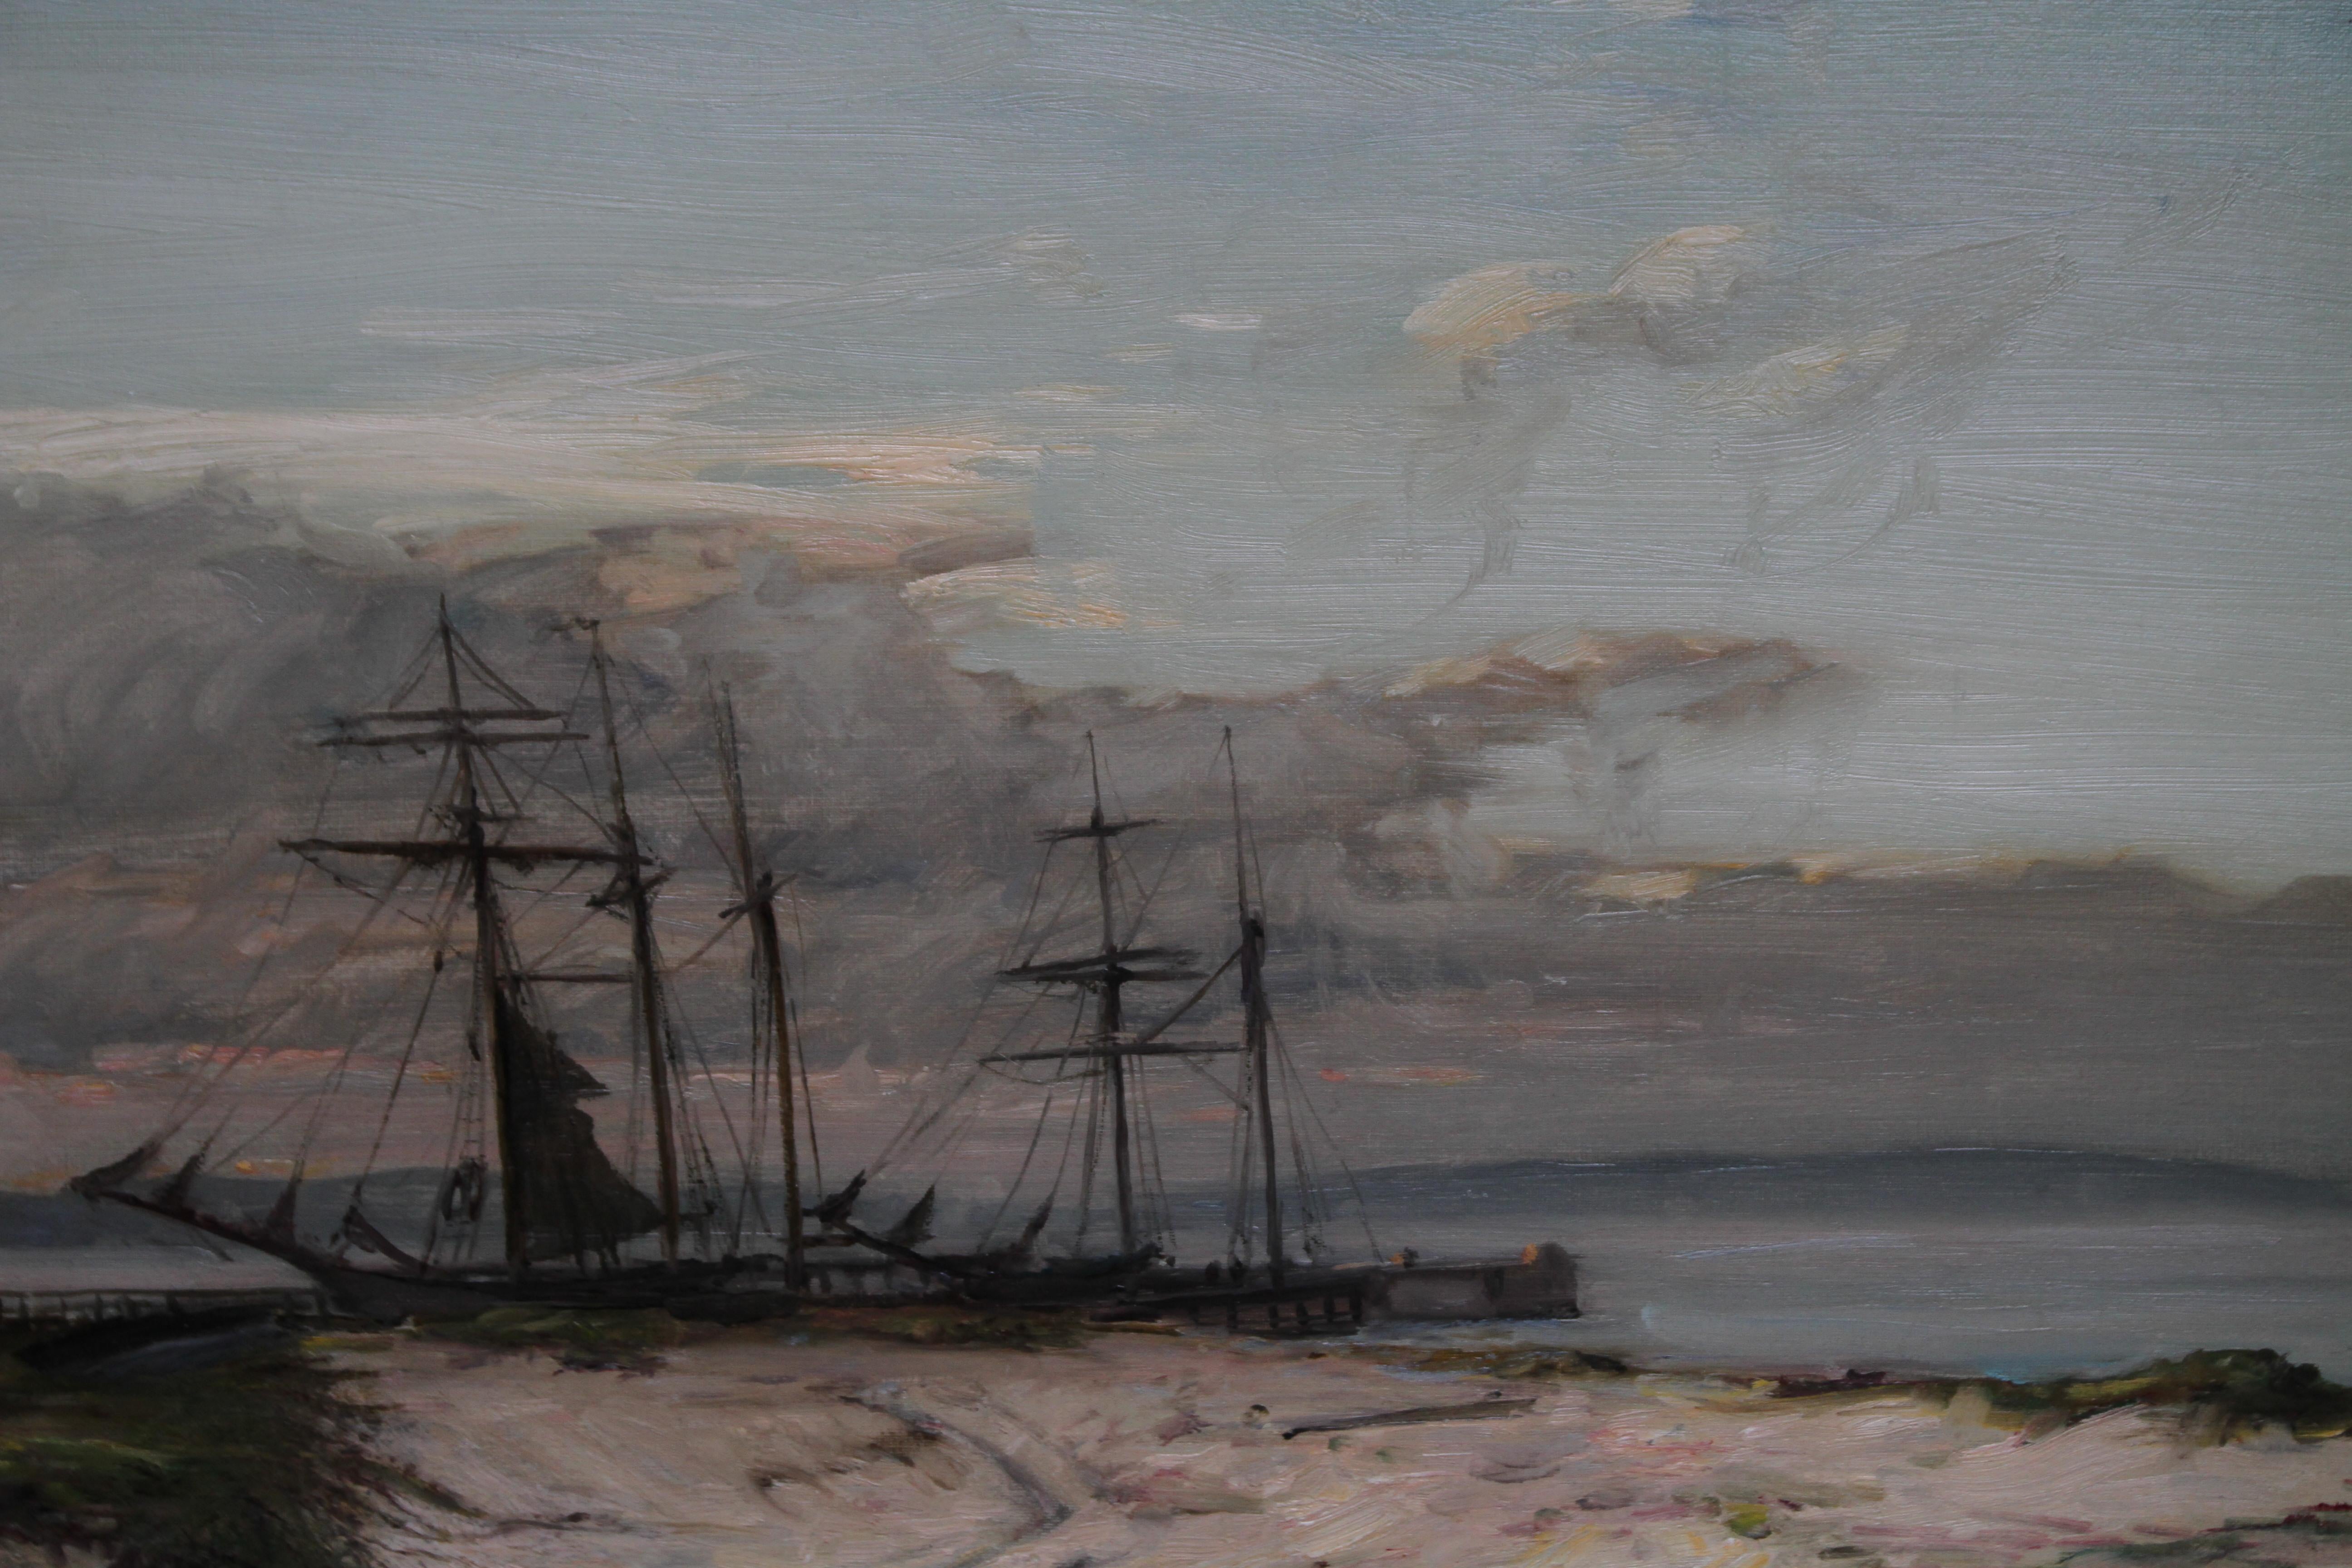 Une belle huile sur toile de l'artiste écossais John Campbell Noble RSA.  Peint vers 1911  Il s'agit d'un bel exemple d'impressionnisme écossais qui représente un paysage fluvial/marin avec le négociant norvégien Anastasia. L'œuvre est très vivante,